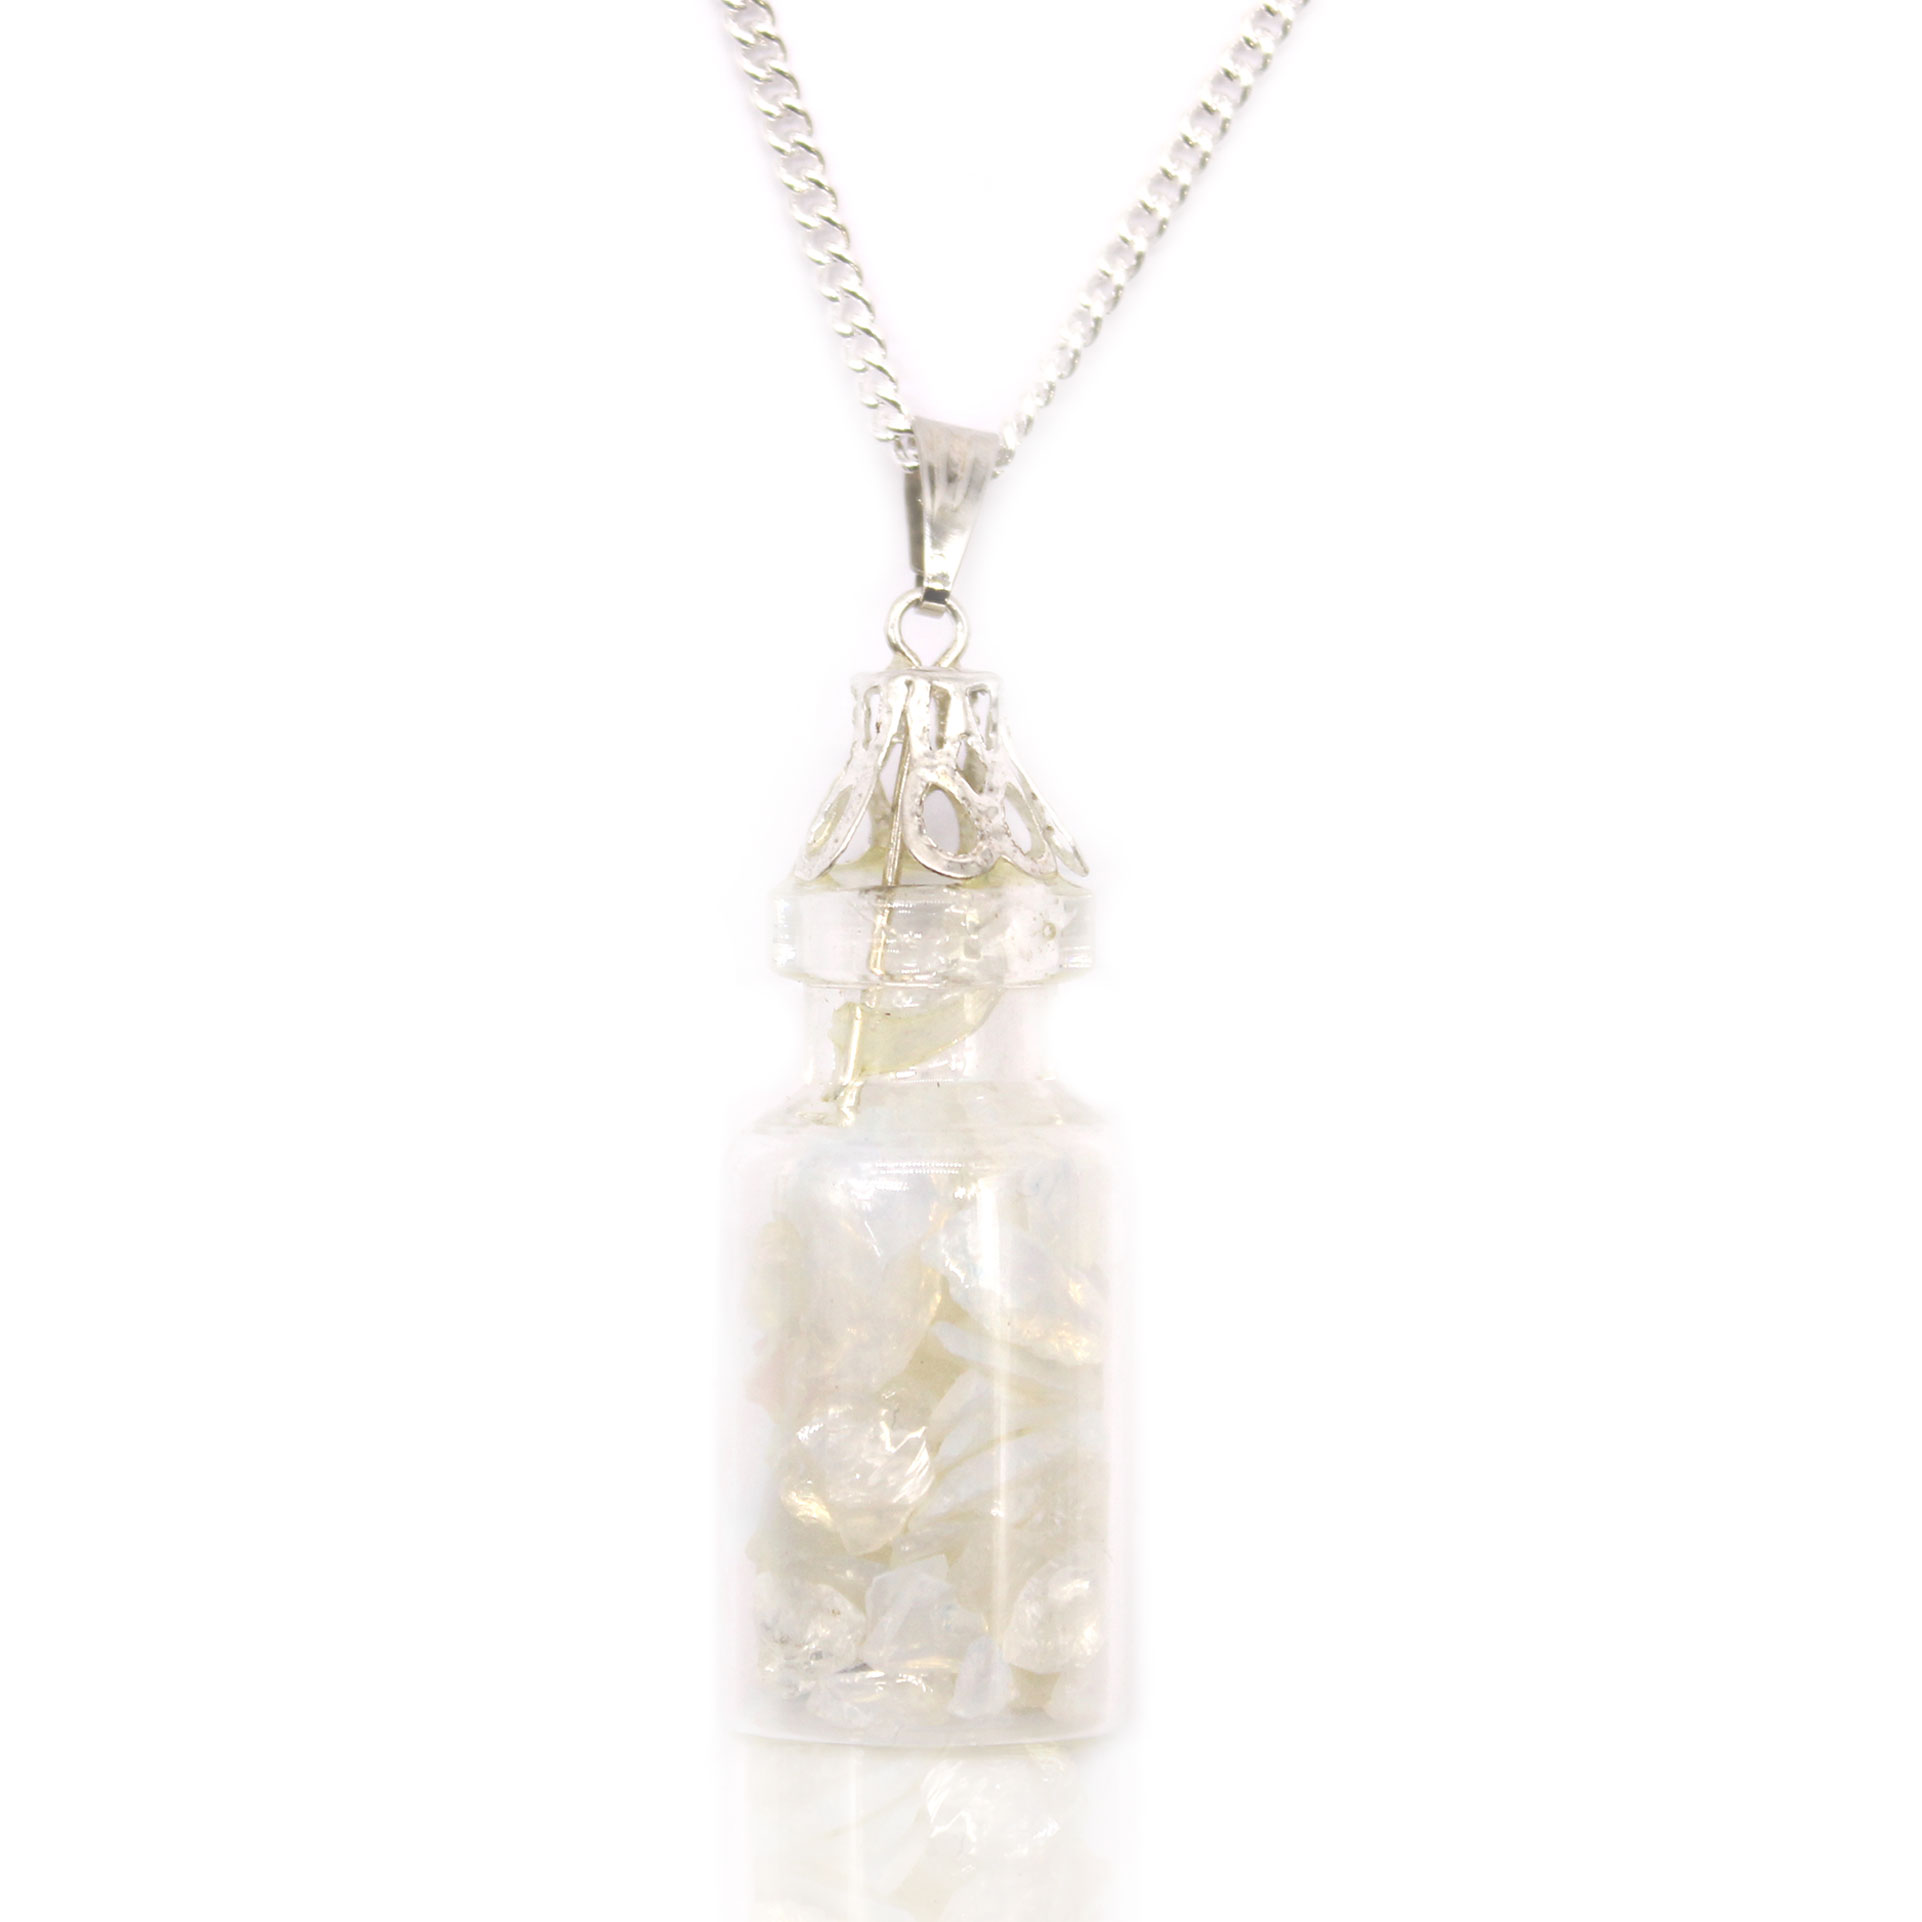 Bottled Gemstones Necklace - Opalite - IGJ-20